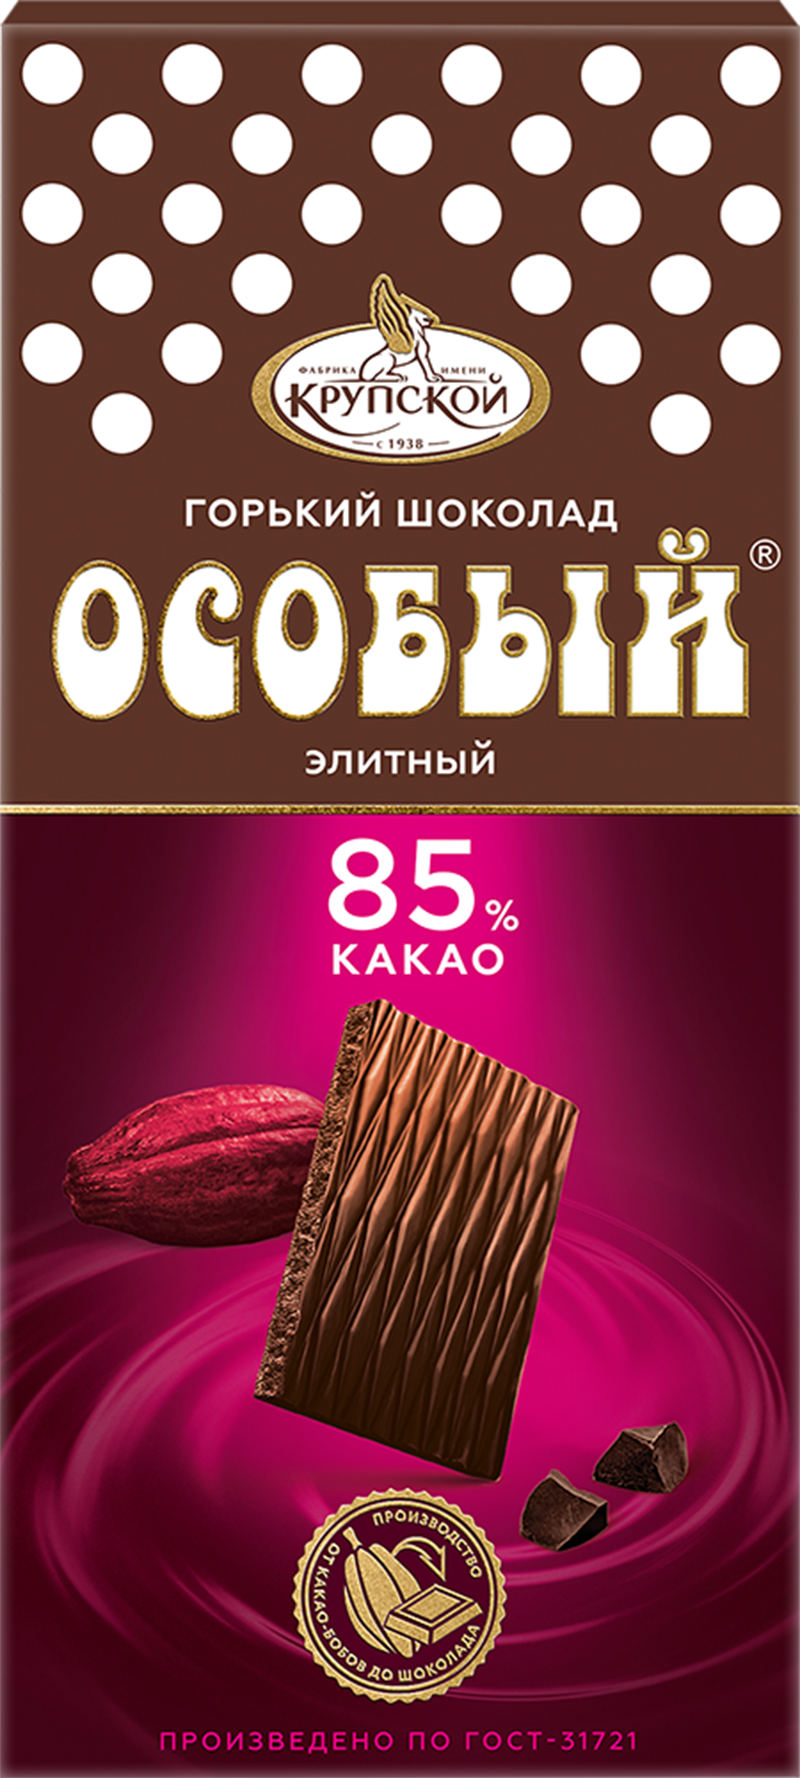 Шоколад Особый горький 85% какао 88г/Славянка